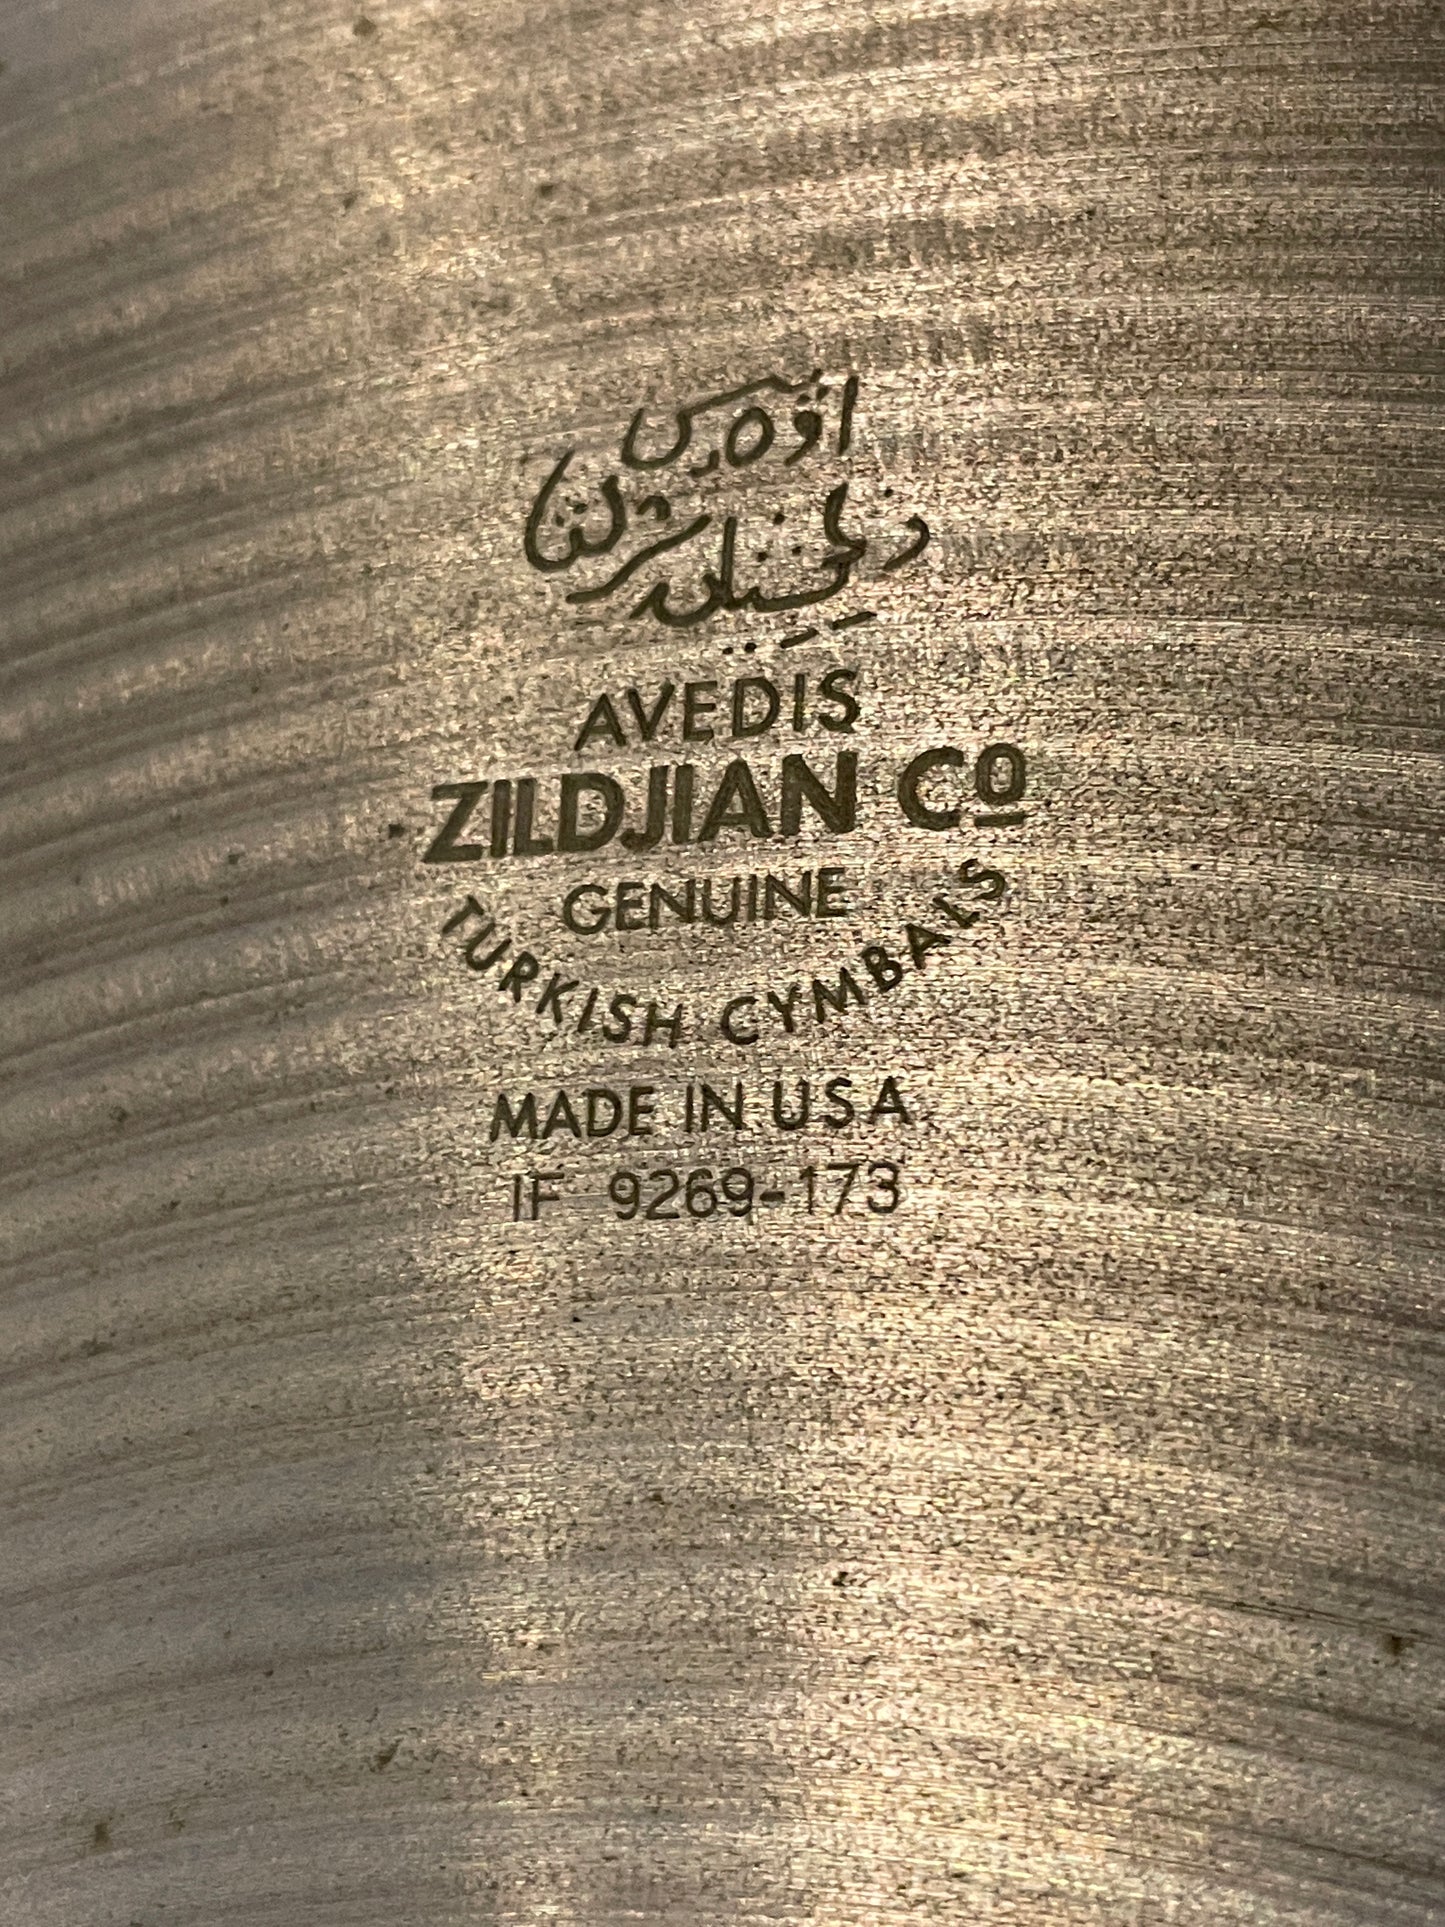 18" Zildjian A China Boy High Cymbal 1410g